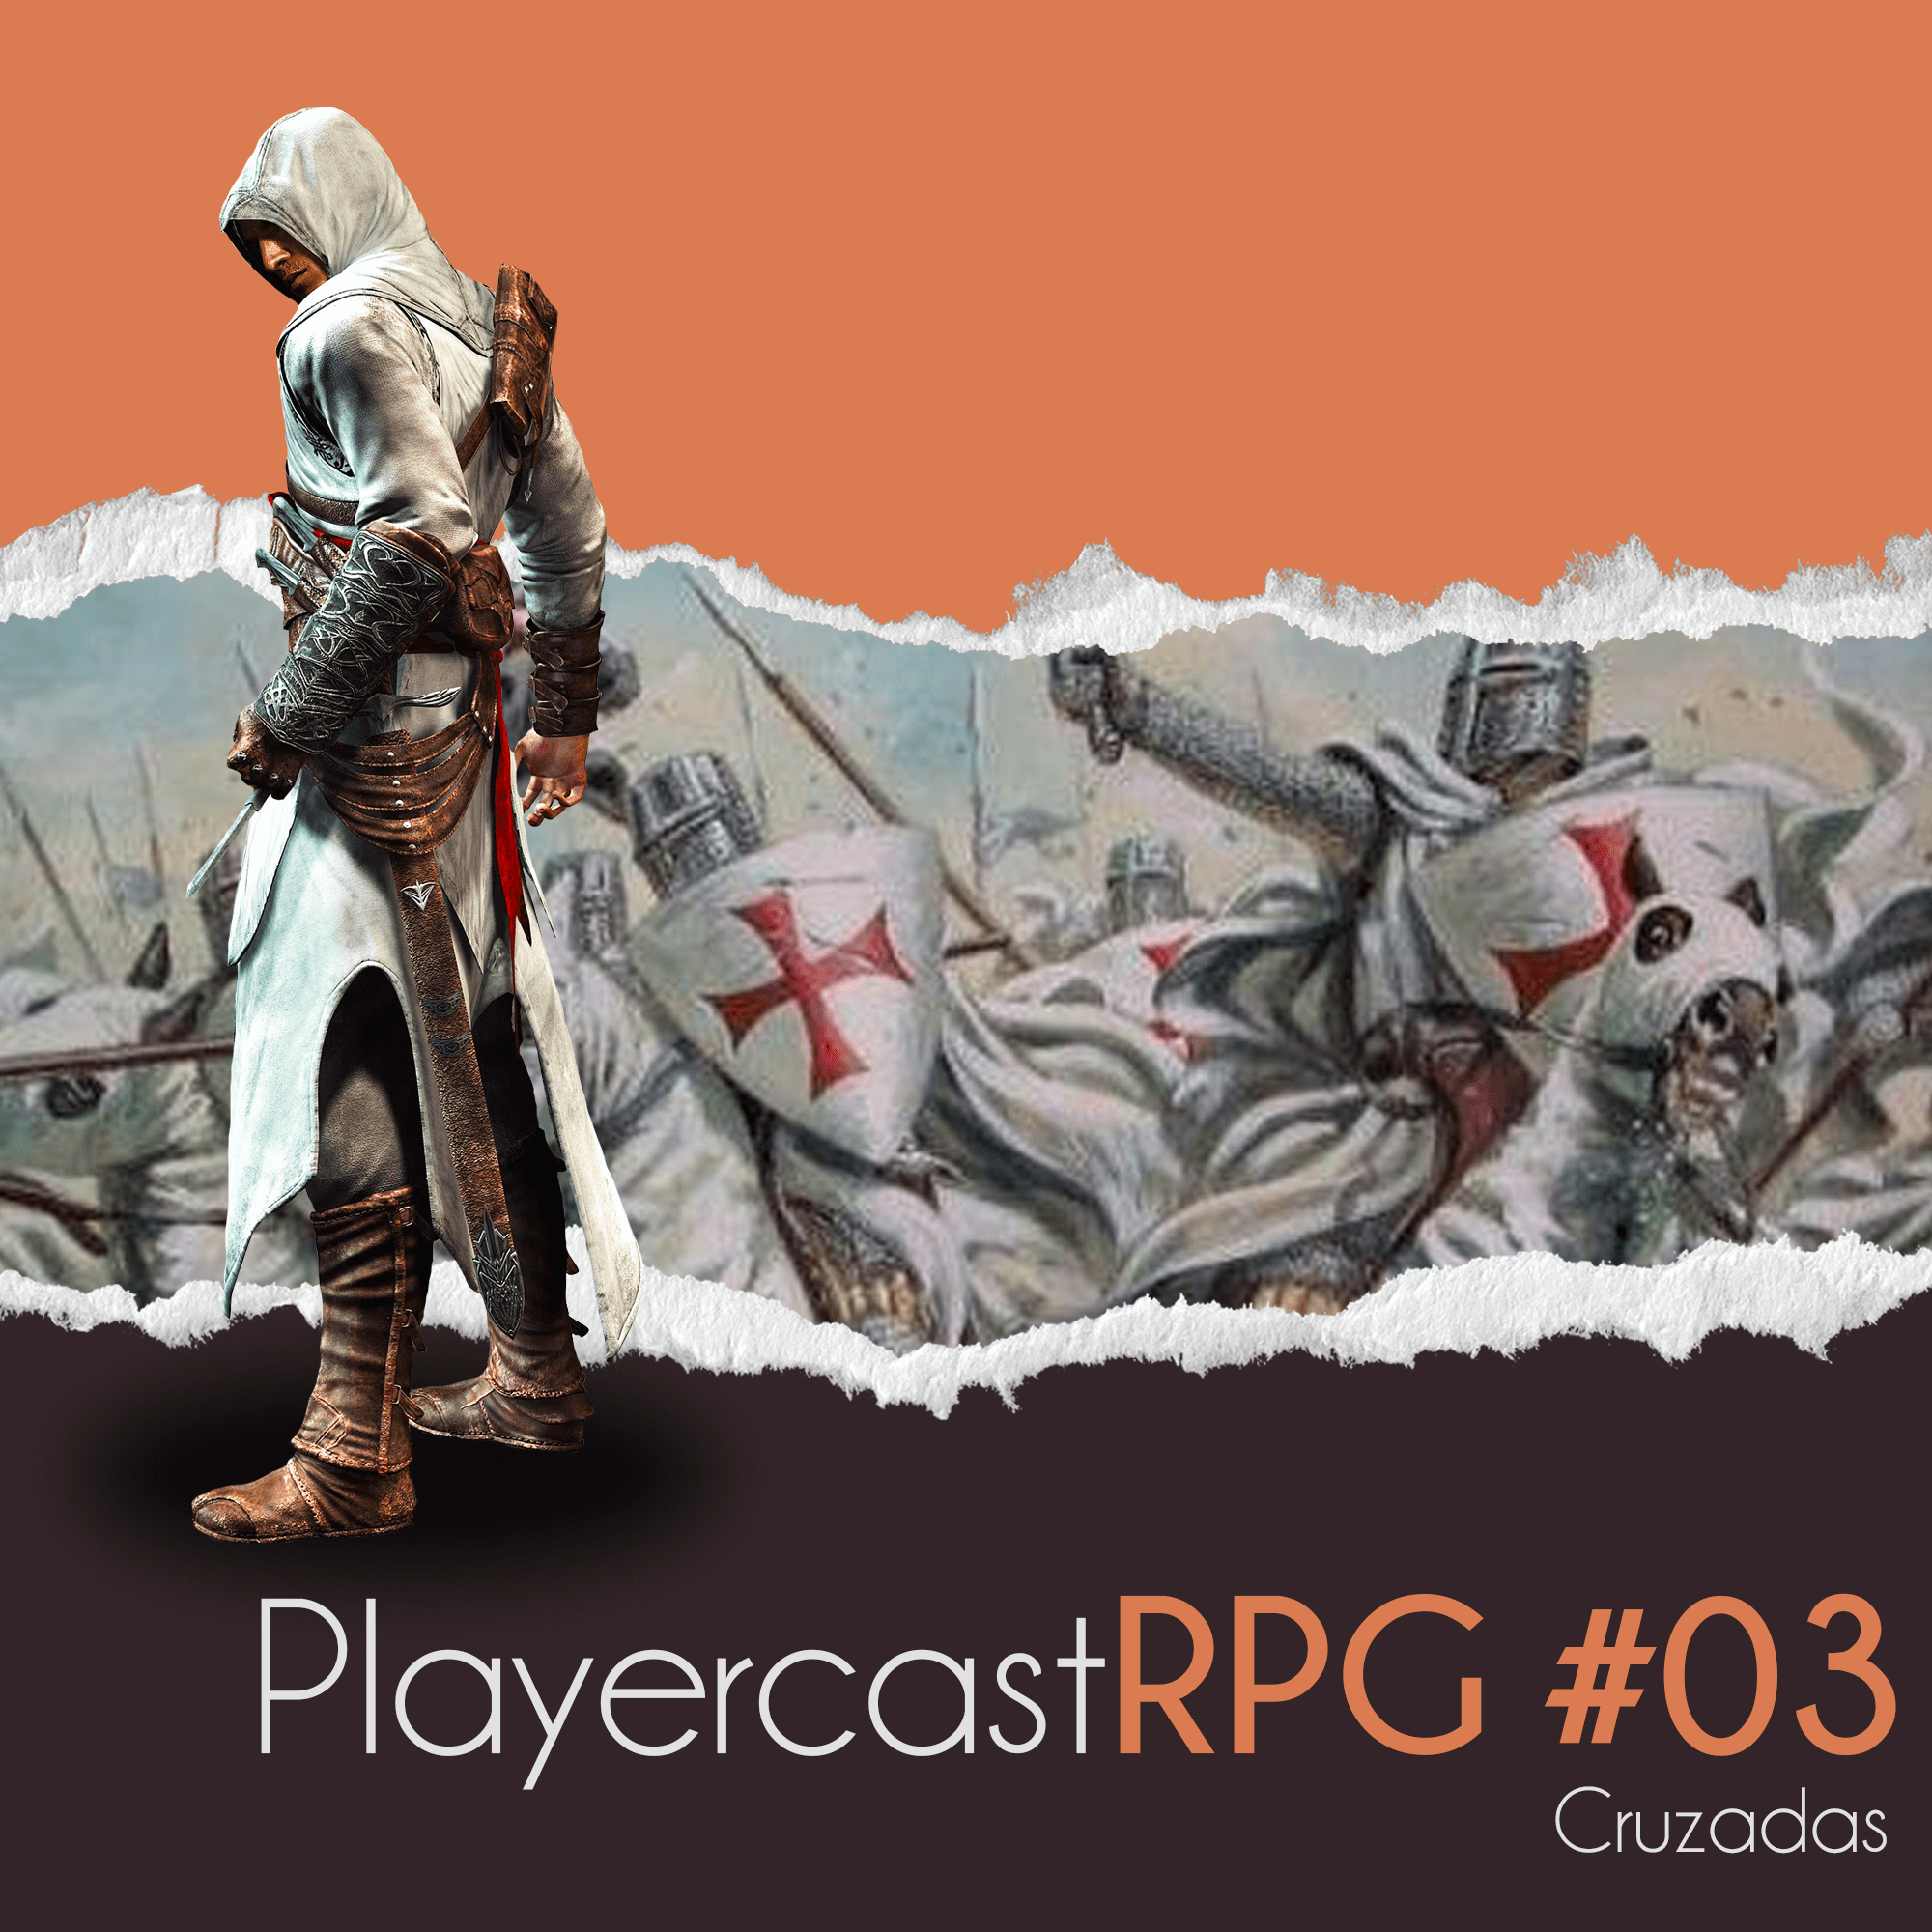 PlayerCast RPG Assassins Creed S01EP3 – Cruzadas